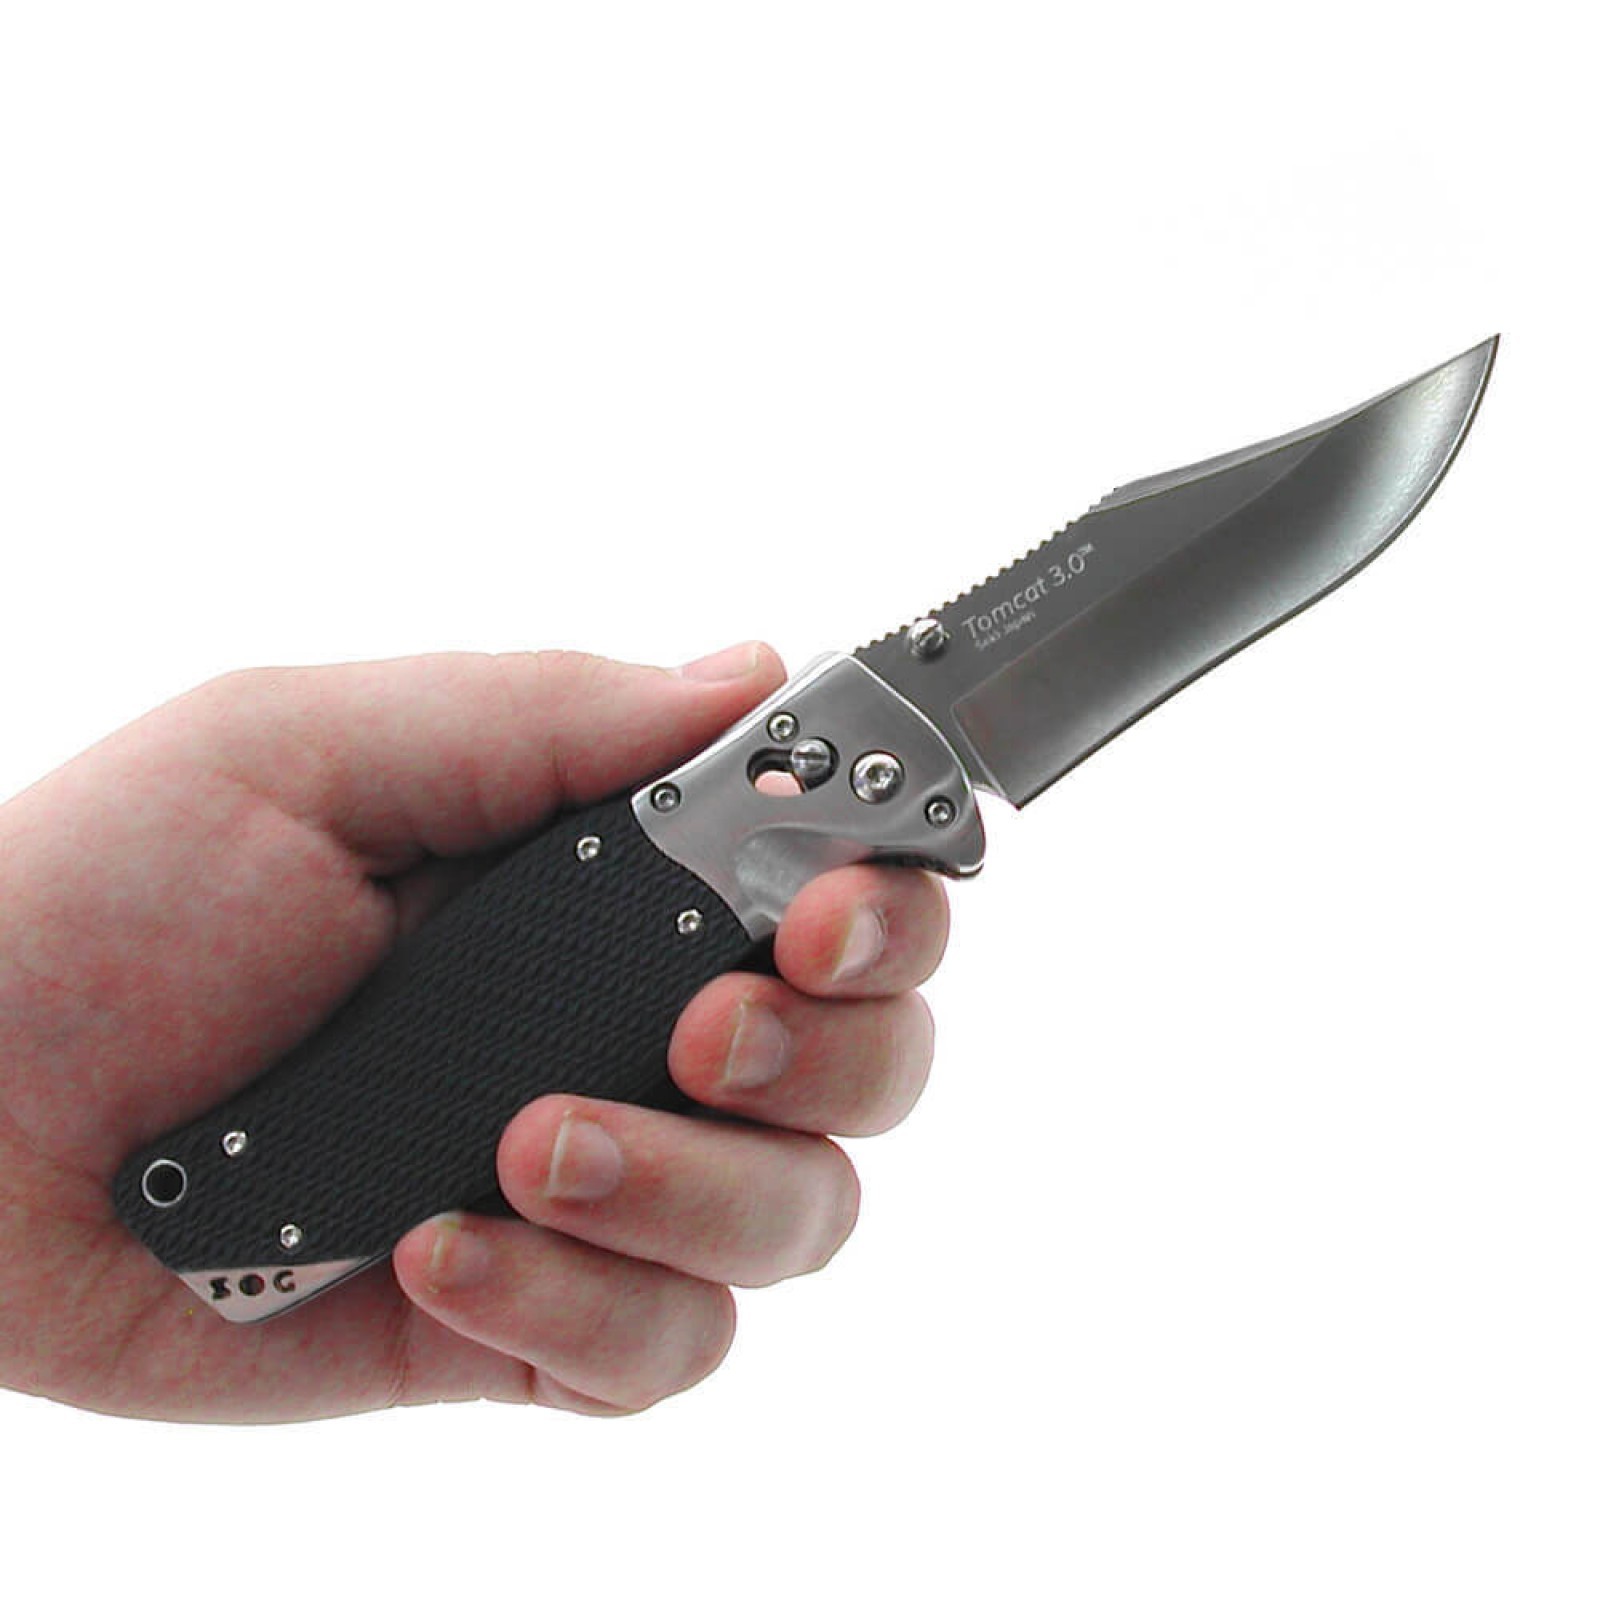 Складной нож Tomcat 3.0 - SOG S95, сталь VG-10, рукоять кратон - фото 10